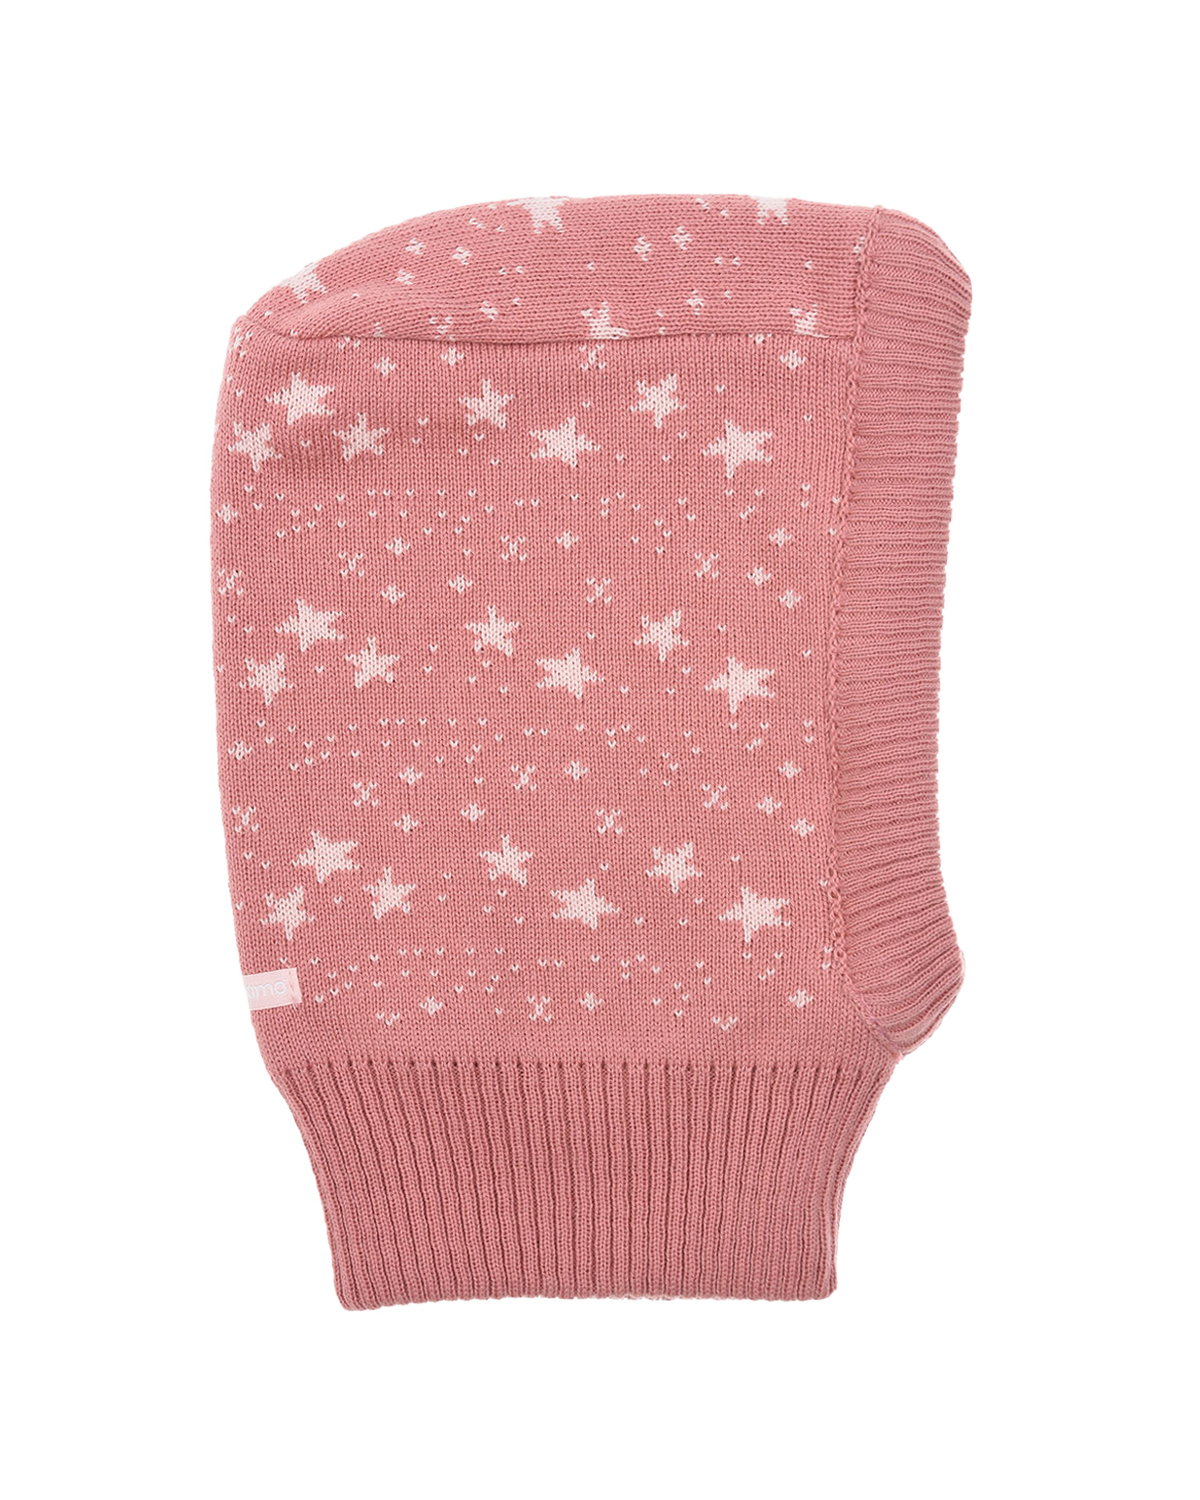 Розовая шапка-шлум с принтом "звездочки" MaxiMo детская, размер 45, цвет розовый - фото 1